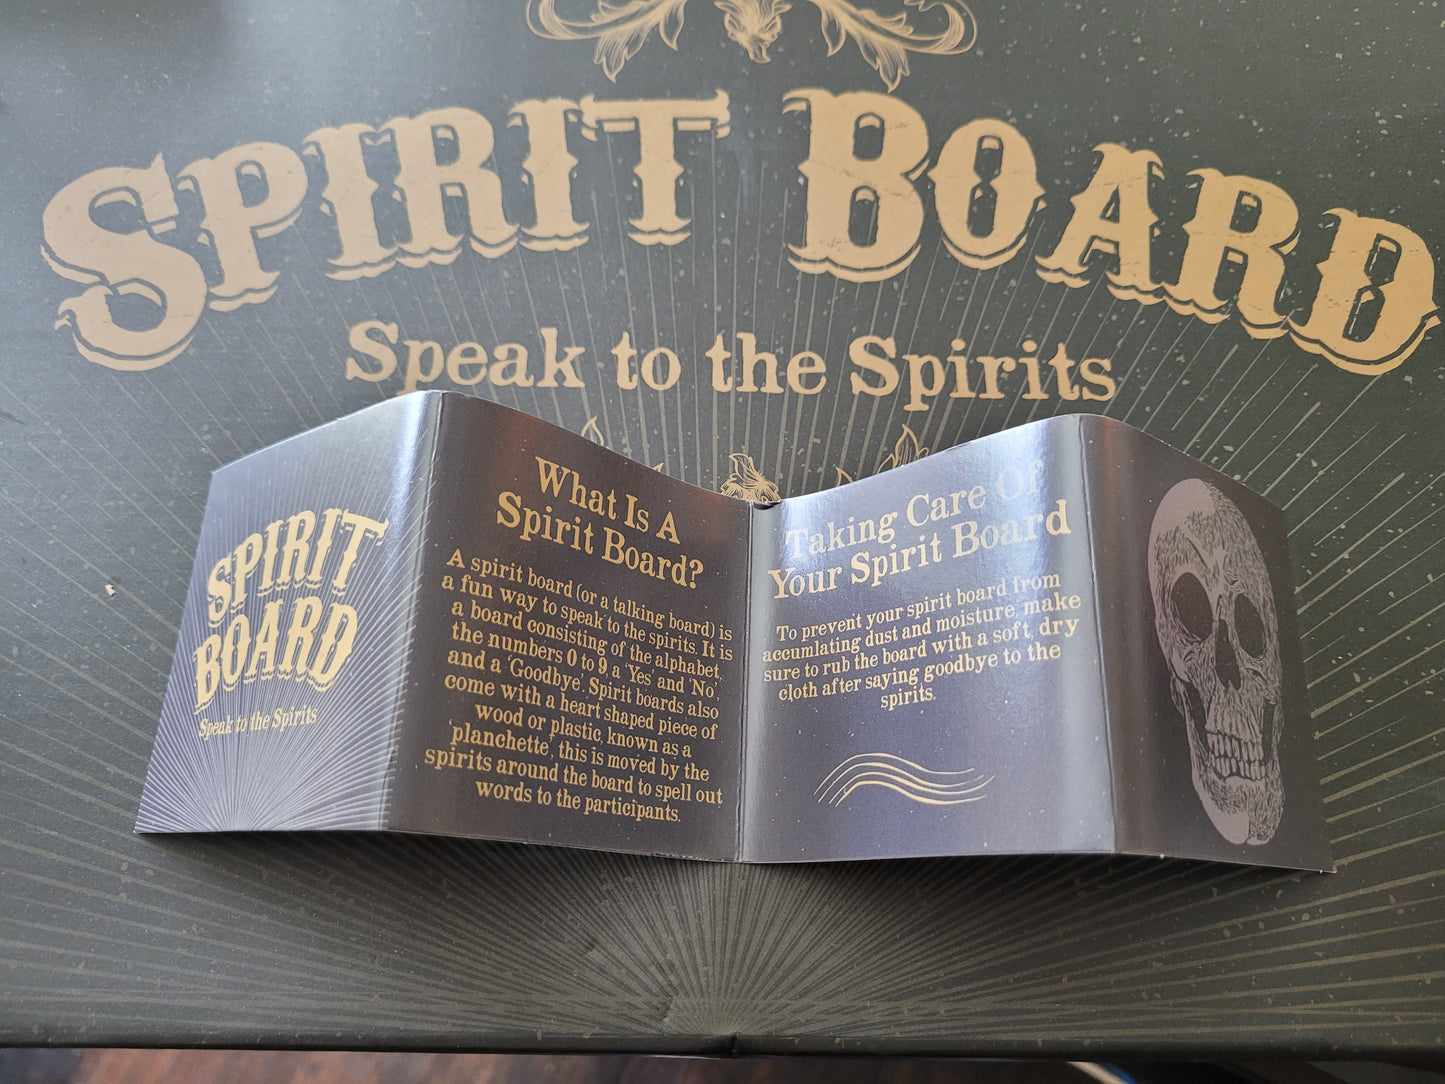 Spirit Board